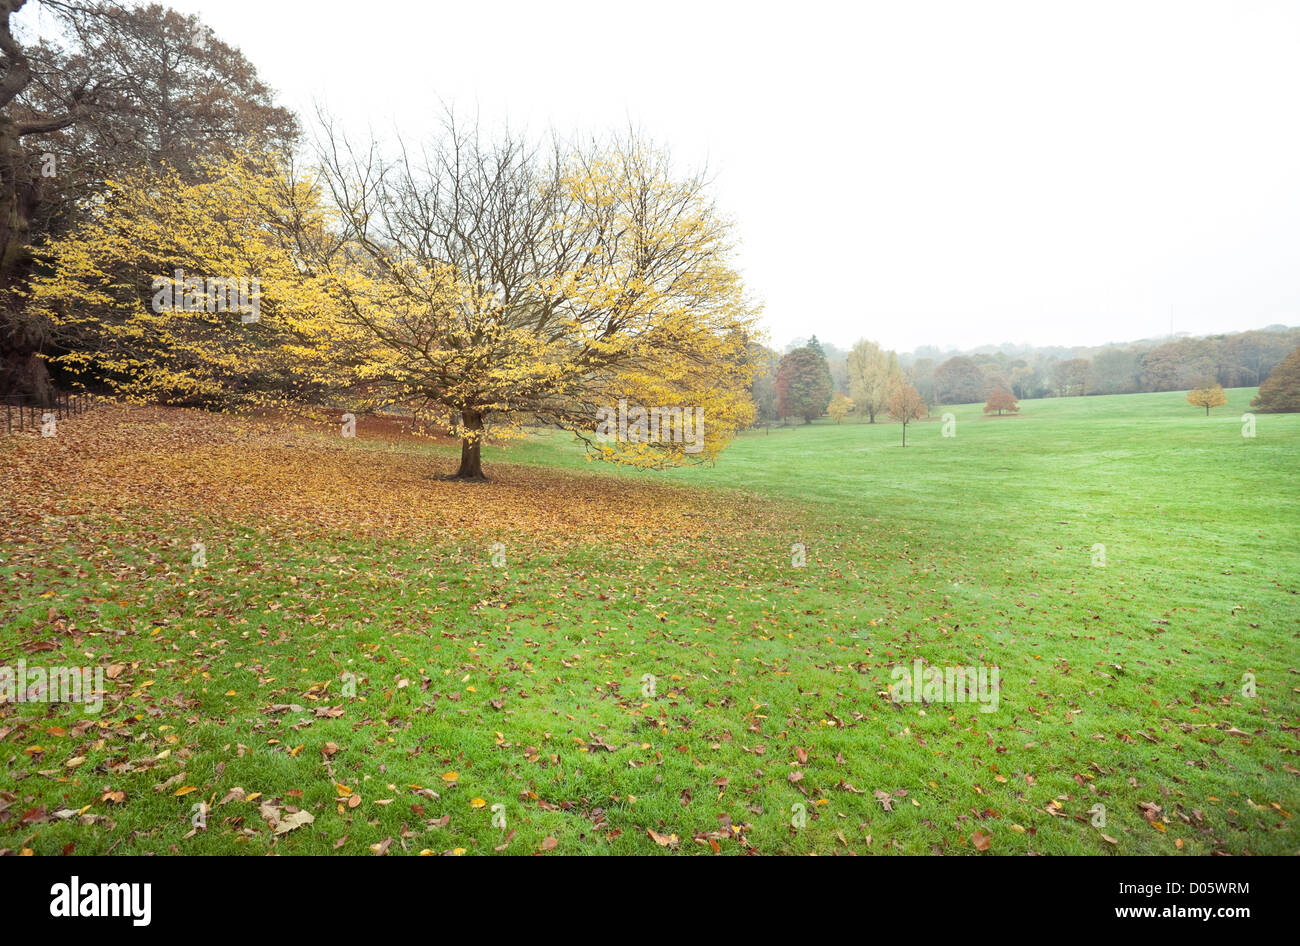 Eine isolierte Baum mit Gefallenen gelbe Blätter auf einem Feld von Gras, Hampstead Heath, Hampstead, London, England, UK. Stockfoto